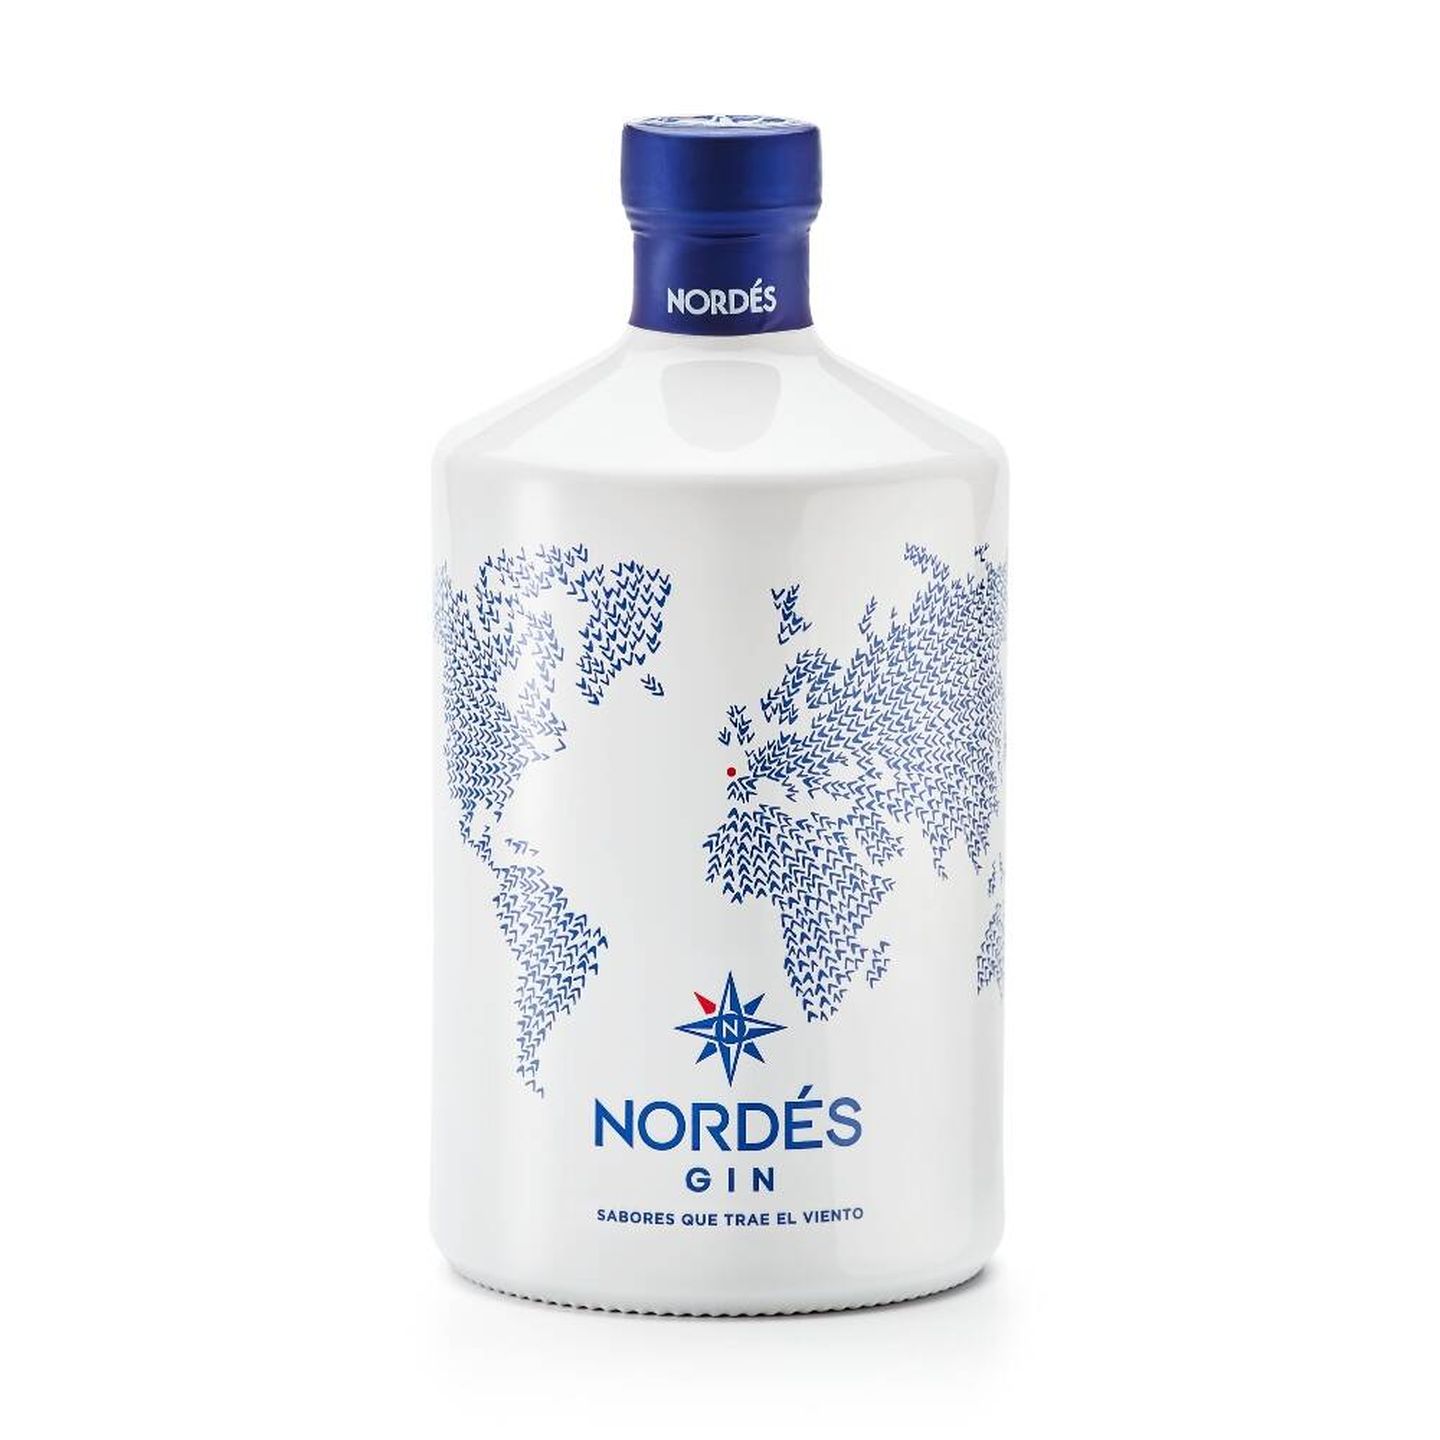 Su distintiva botella está inspirada en la cerámica clásica gallega de Sargadelos. (Cortesía)